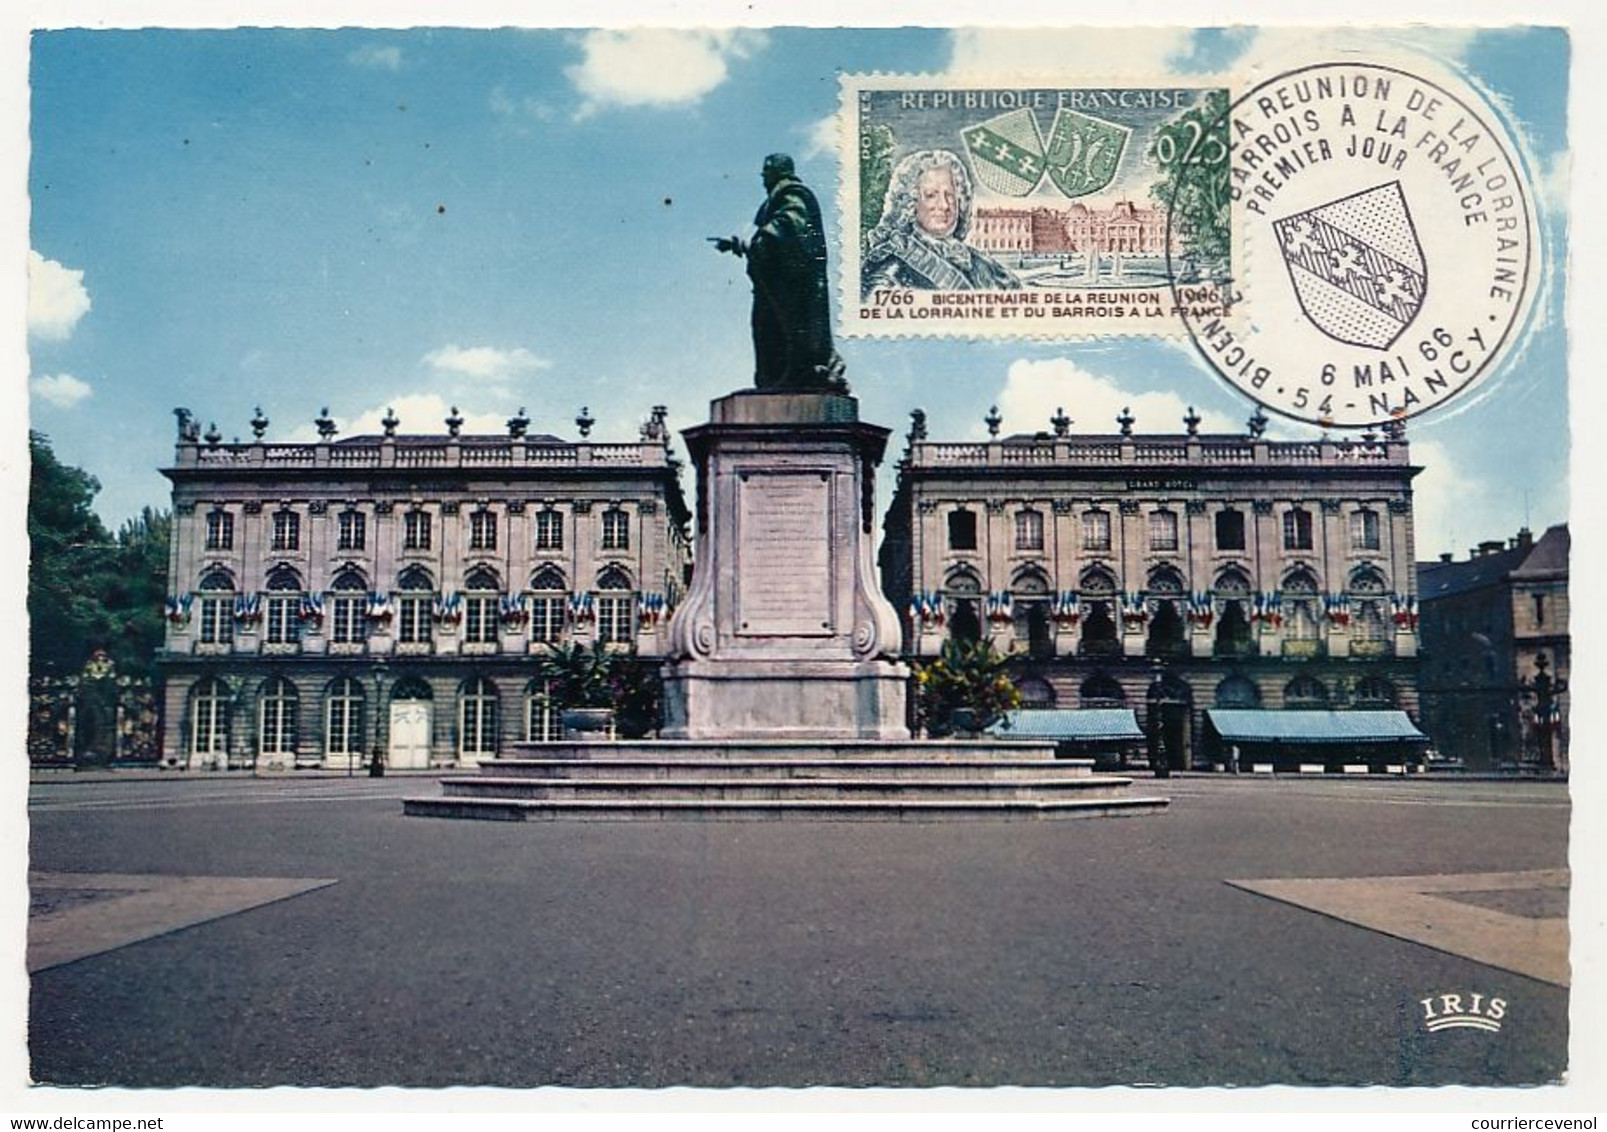 FRANCE - Carte maximum - Bicentenaire de la Réunion de la Lorraine à la France - Nancy - 6 Mai 1966